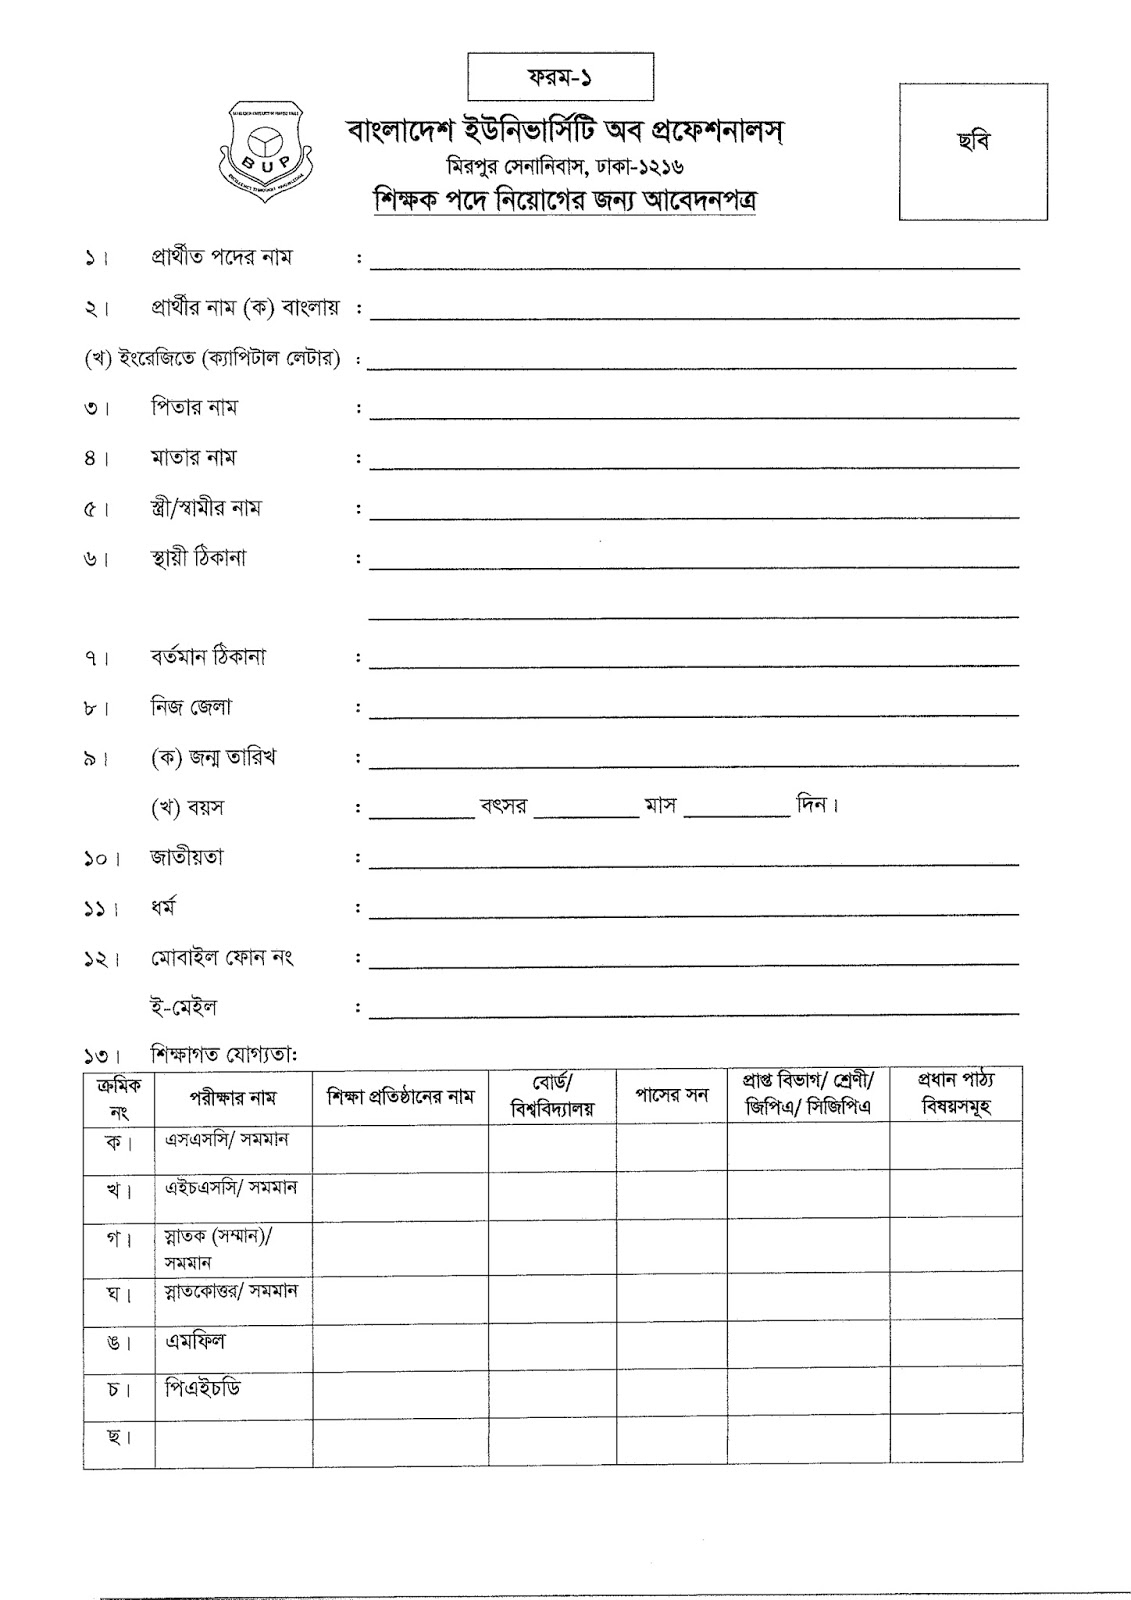 BUP Teacher Application Form